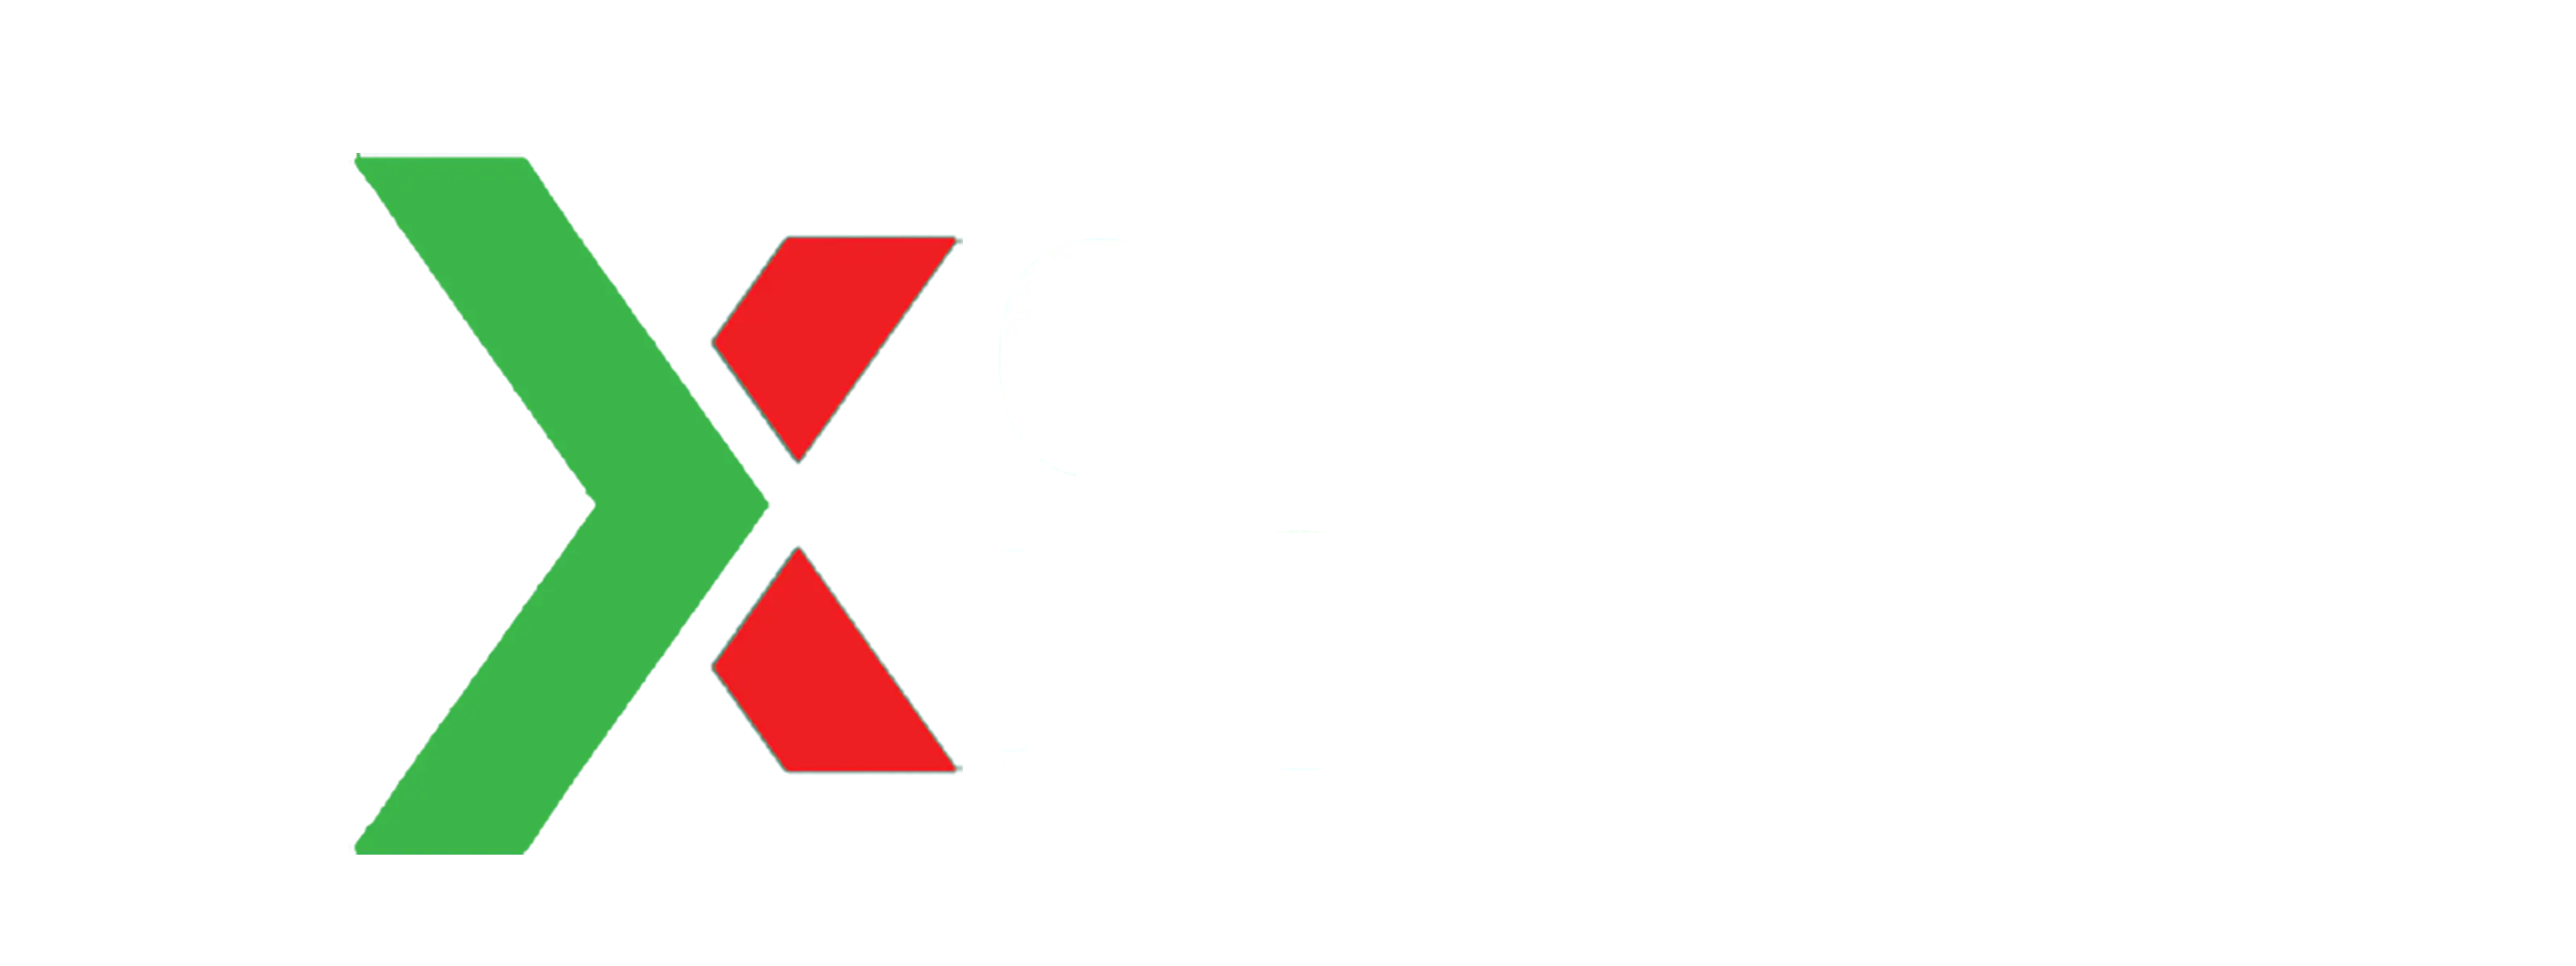 olx forex